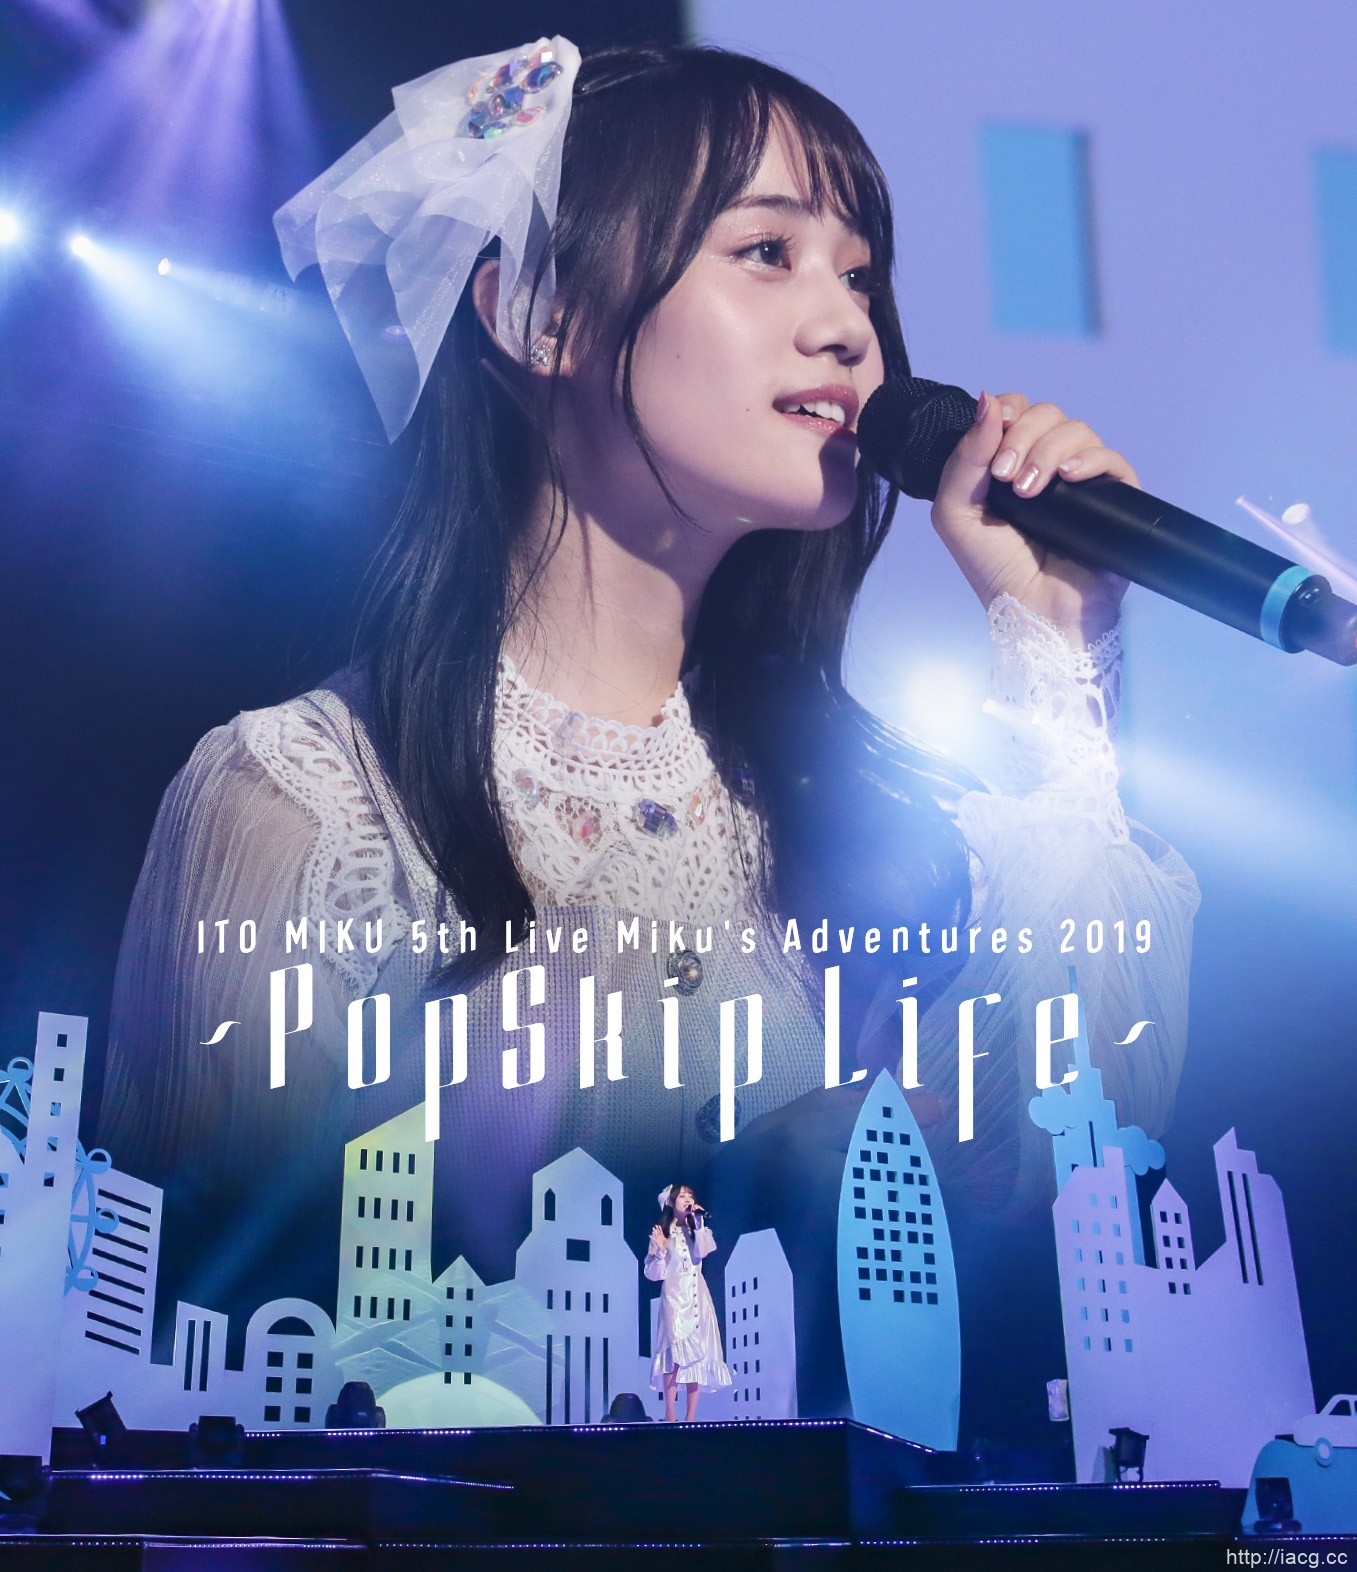 声优歌手伊藤美来LIVE Blu-ray封面照片公开 4月22日发售!